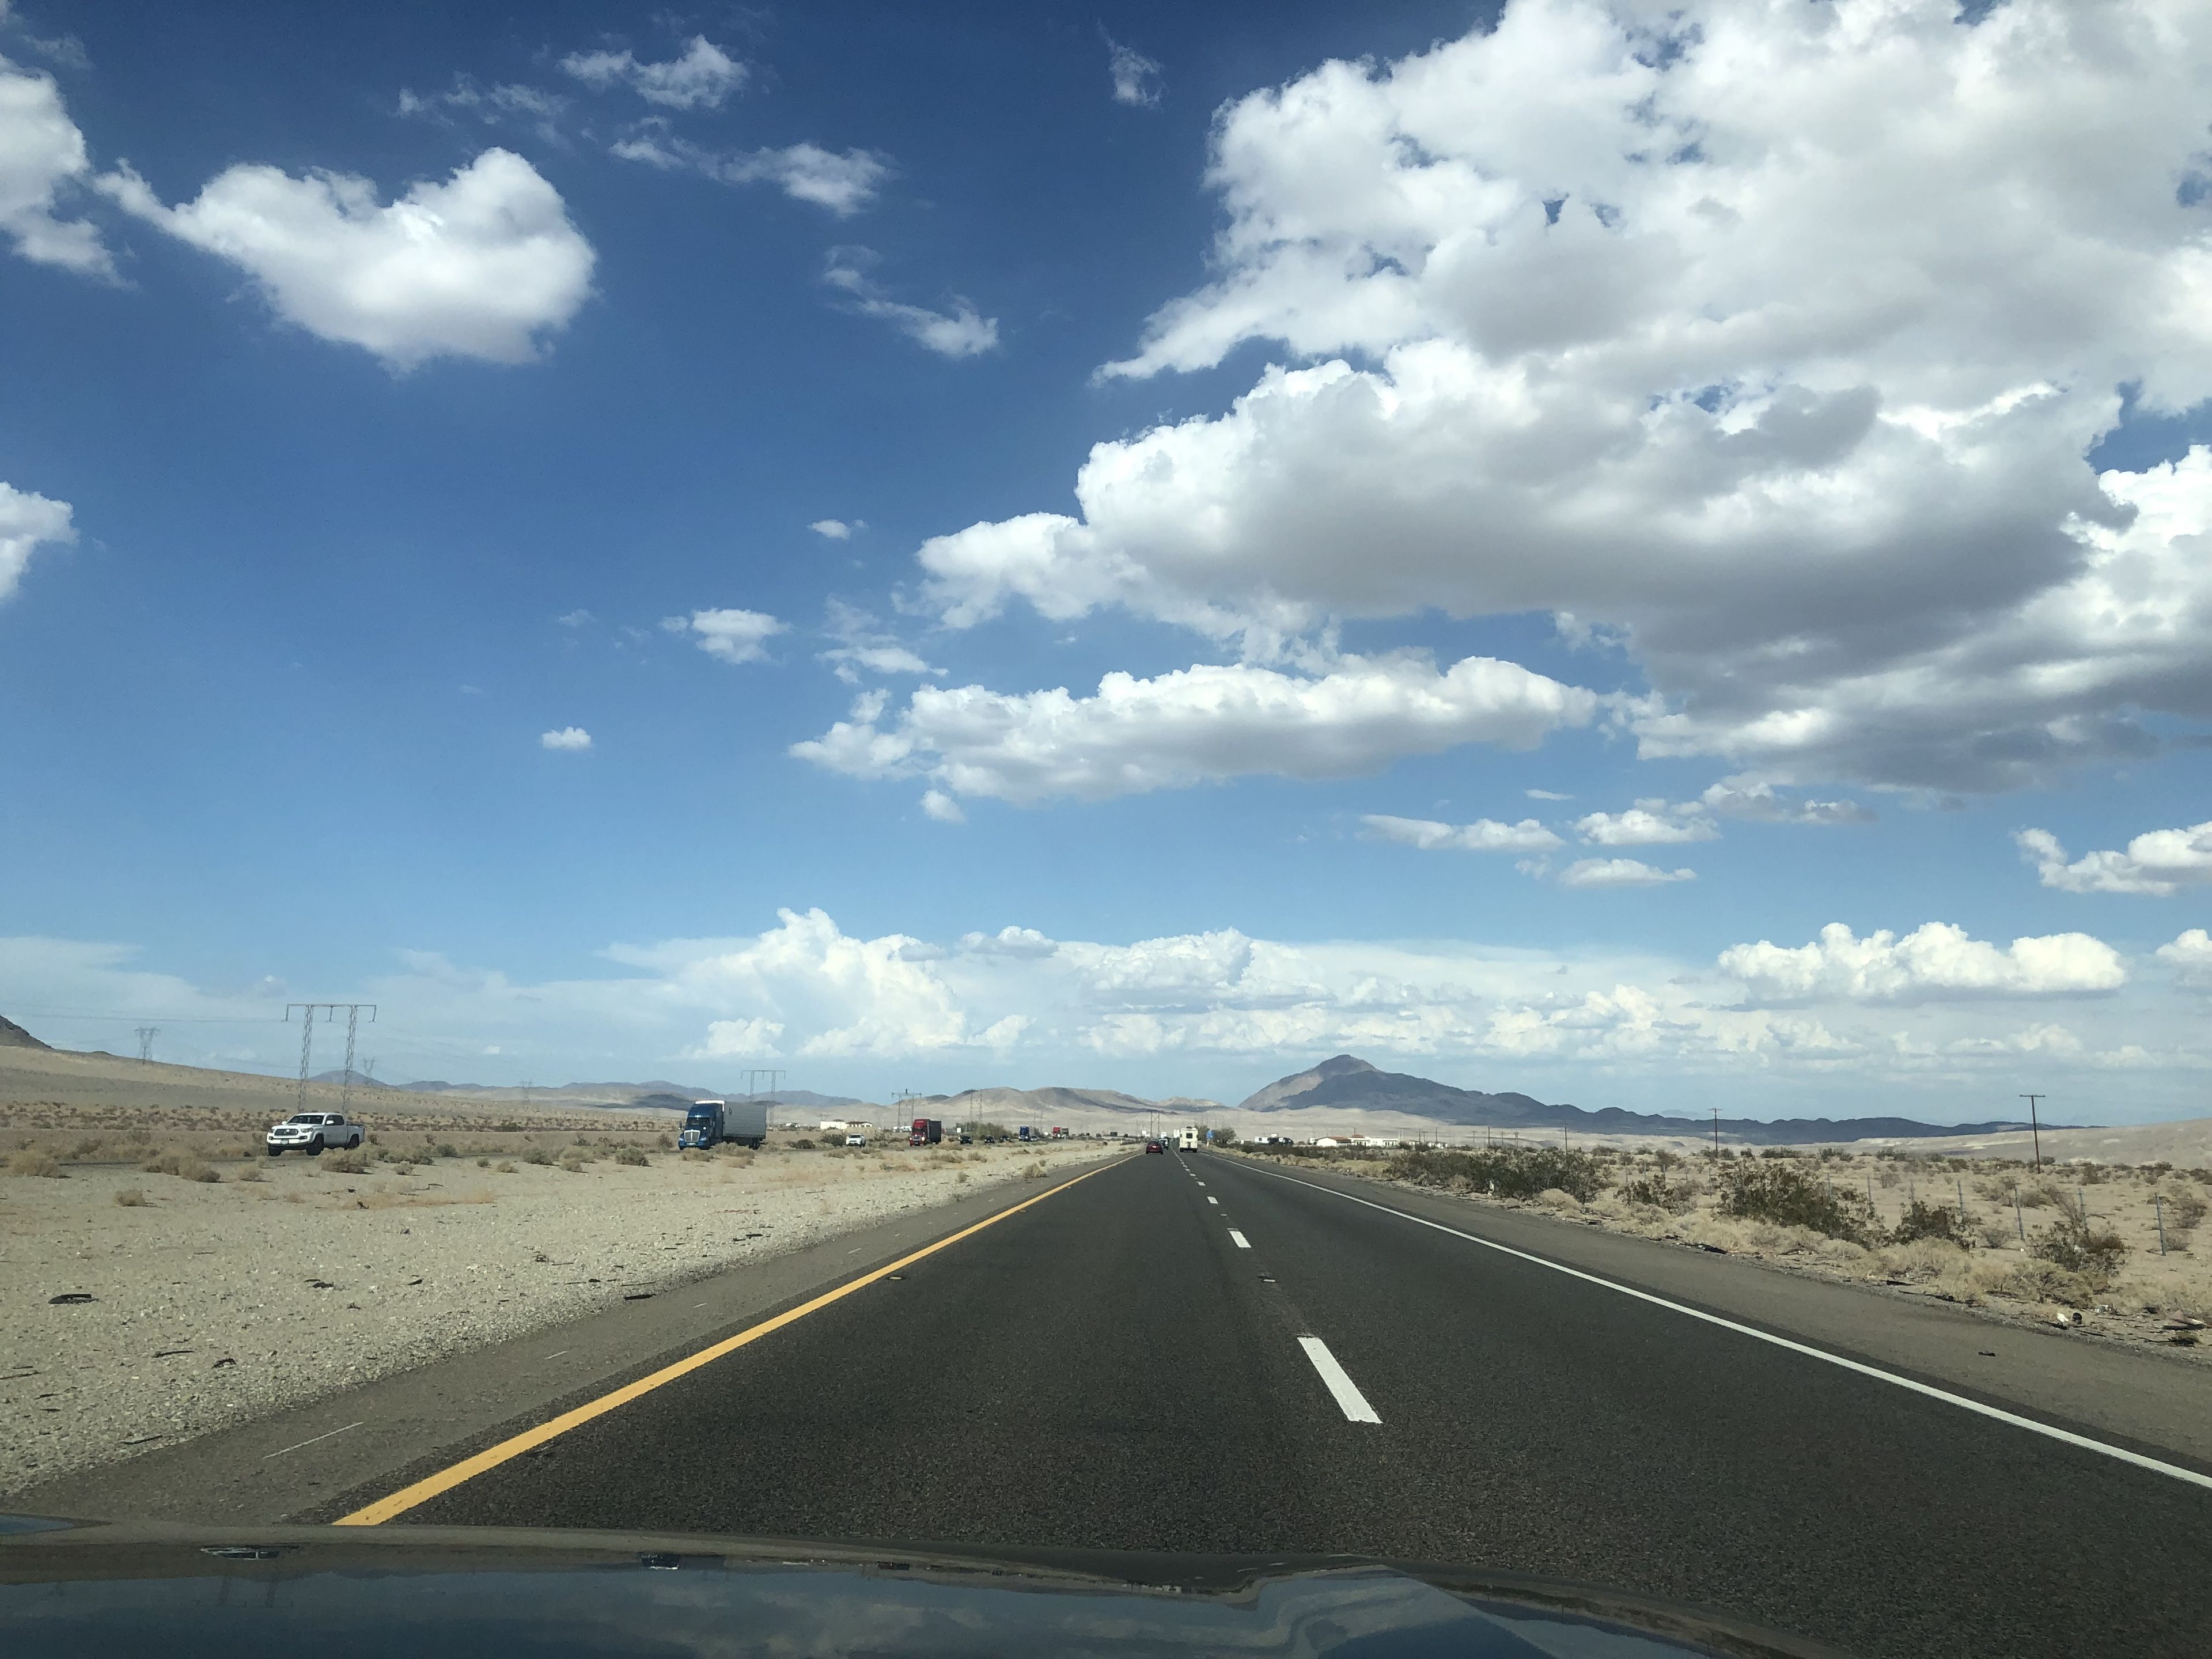 Largas carreteras por el desierto.